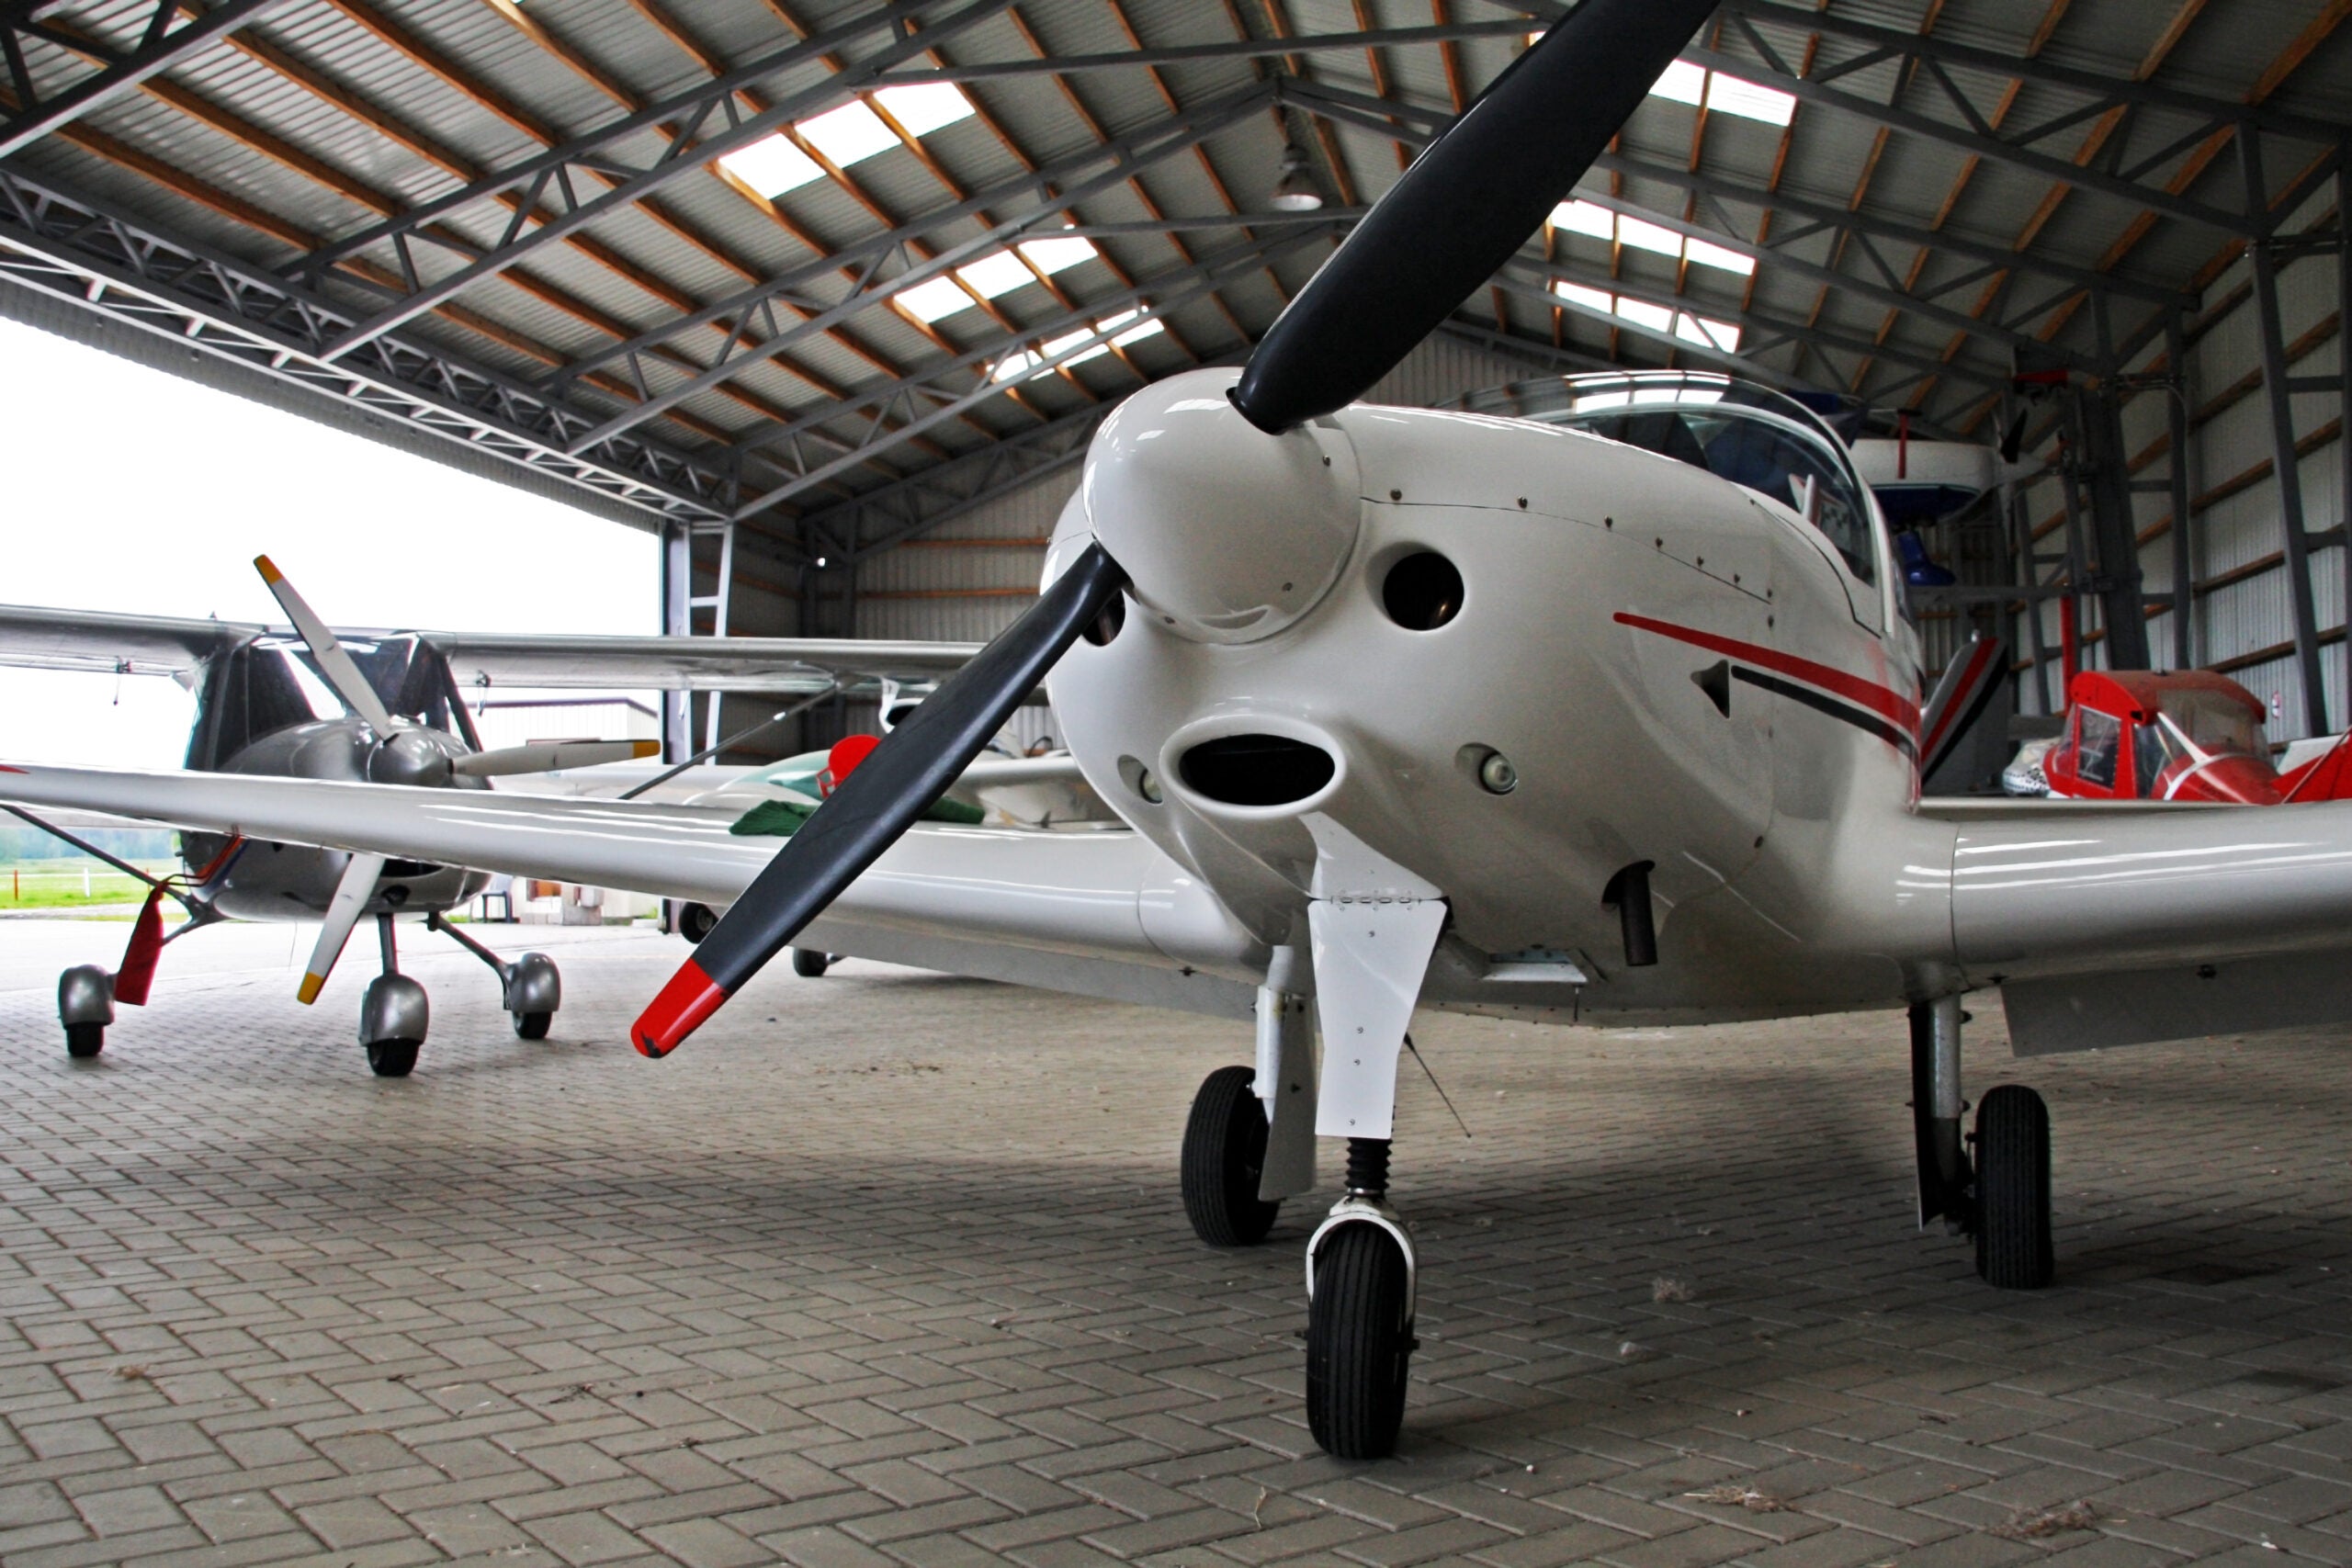 An airplane in a hangar